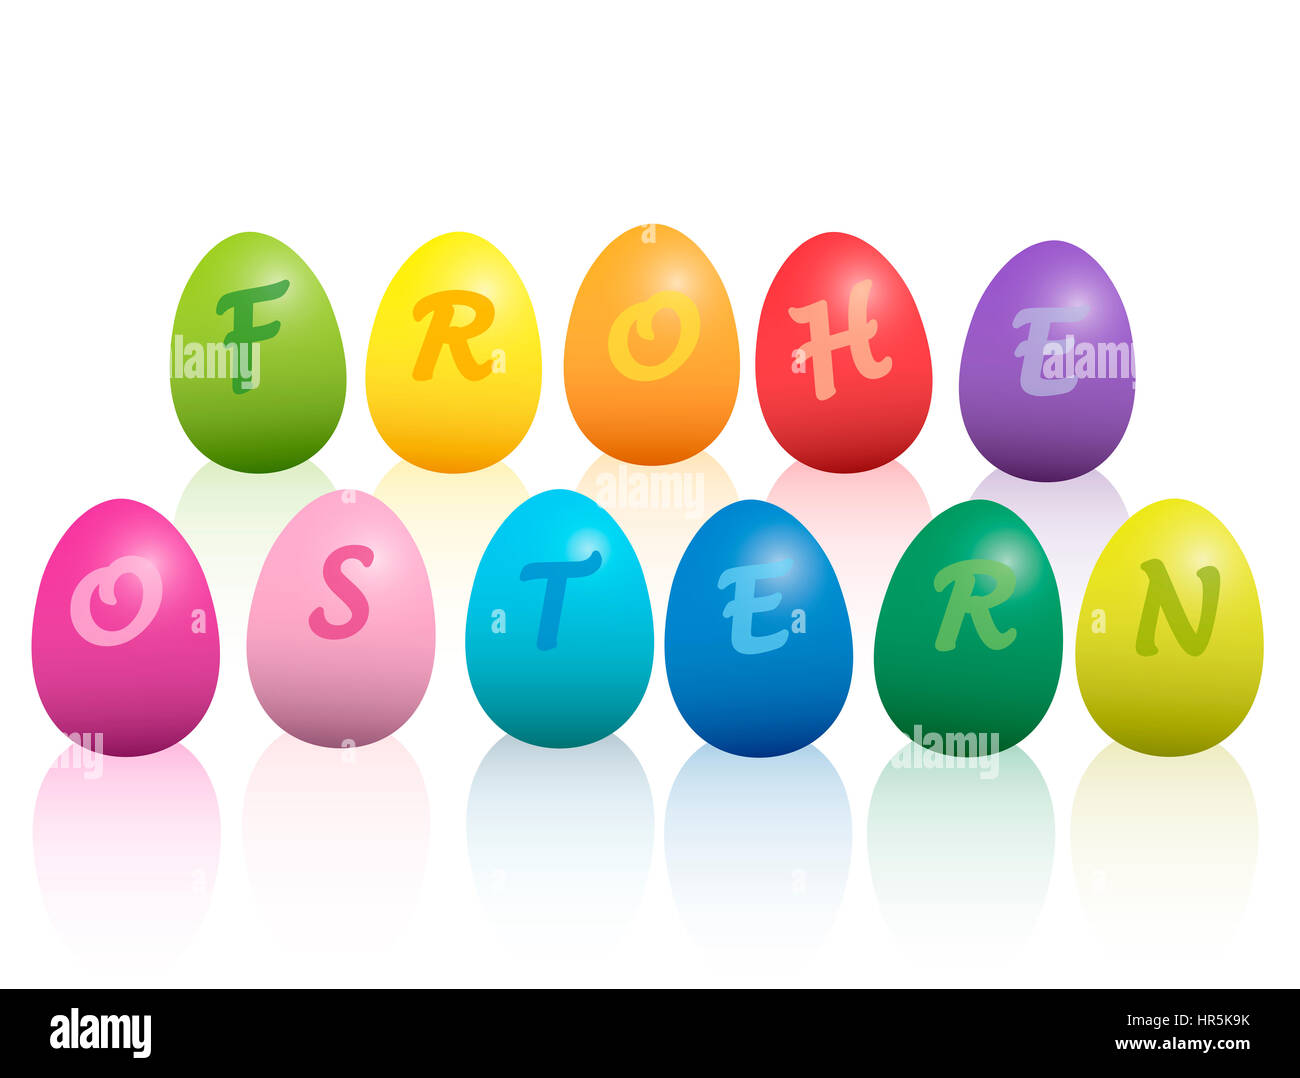 FROHE OSTERN - Joyeuses Pâques en langue allemande - écrit avec les oeufs de Pâques colorés. Illustration sur fond blanc. Banque D'Images